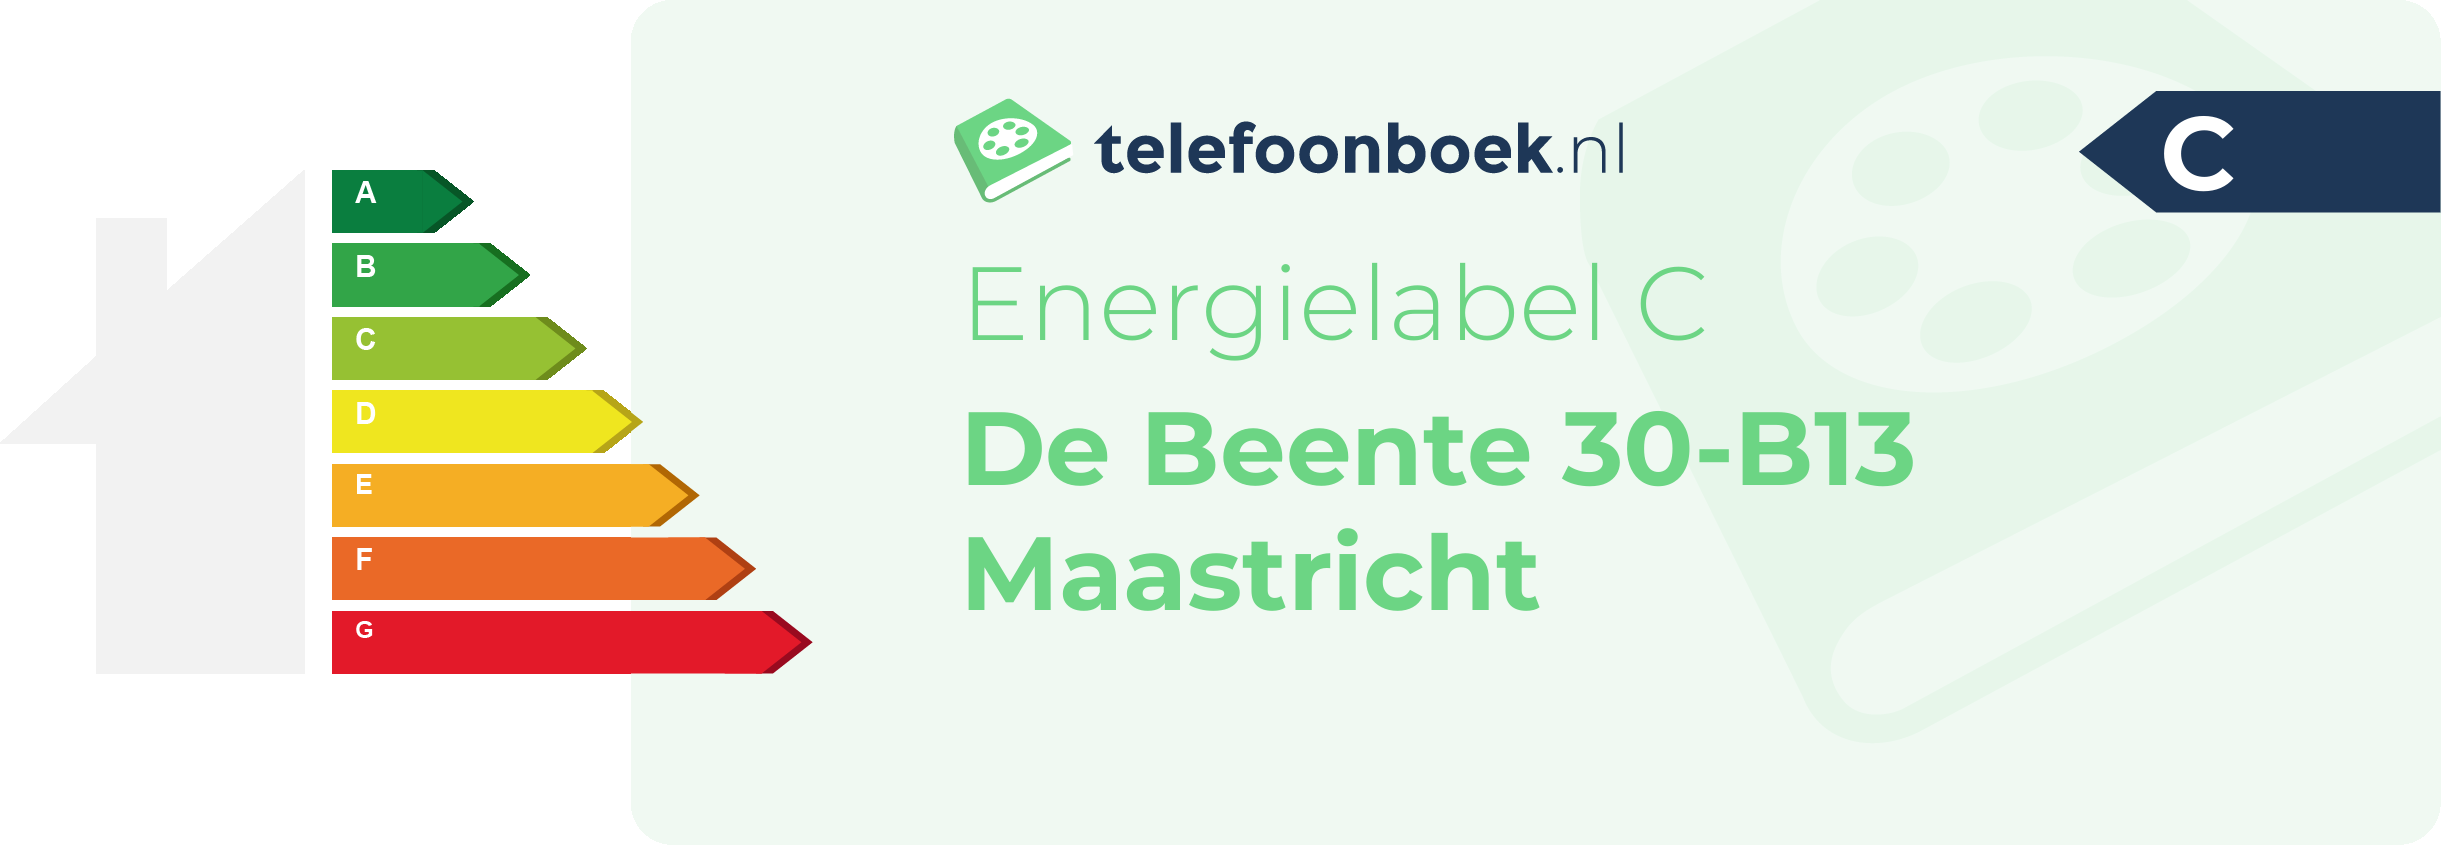 Energielabel De Beente 30-B13 Maastricht